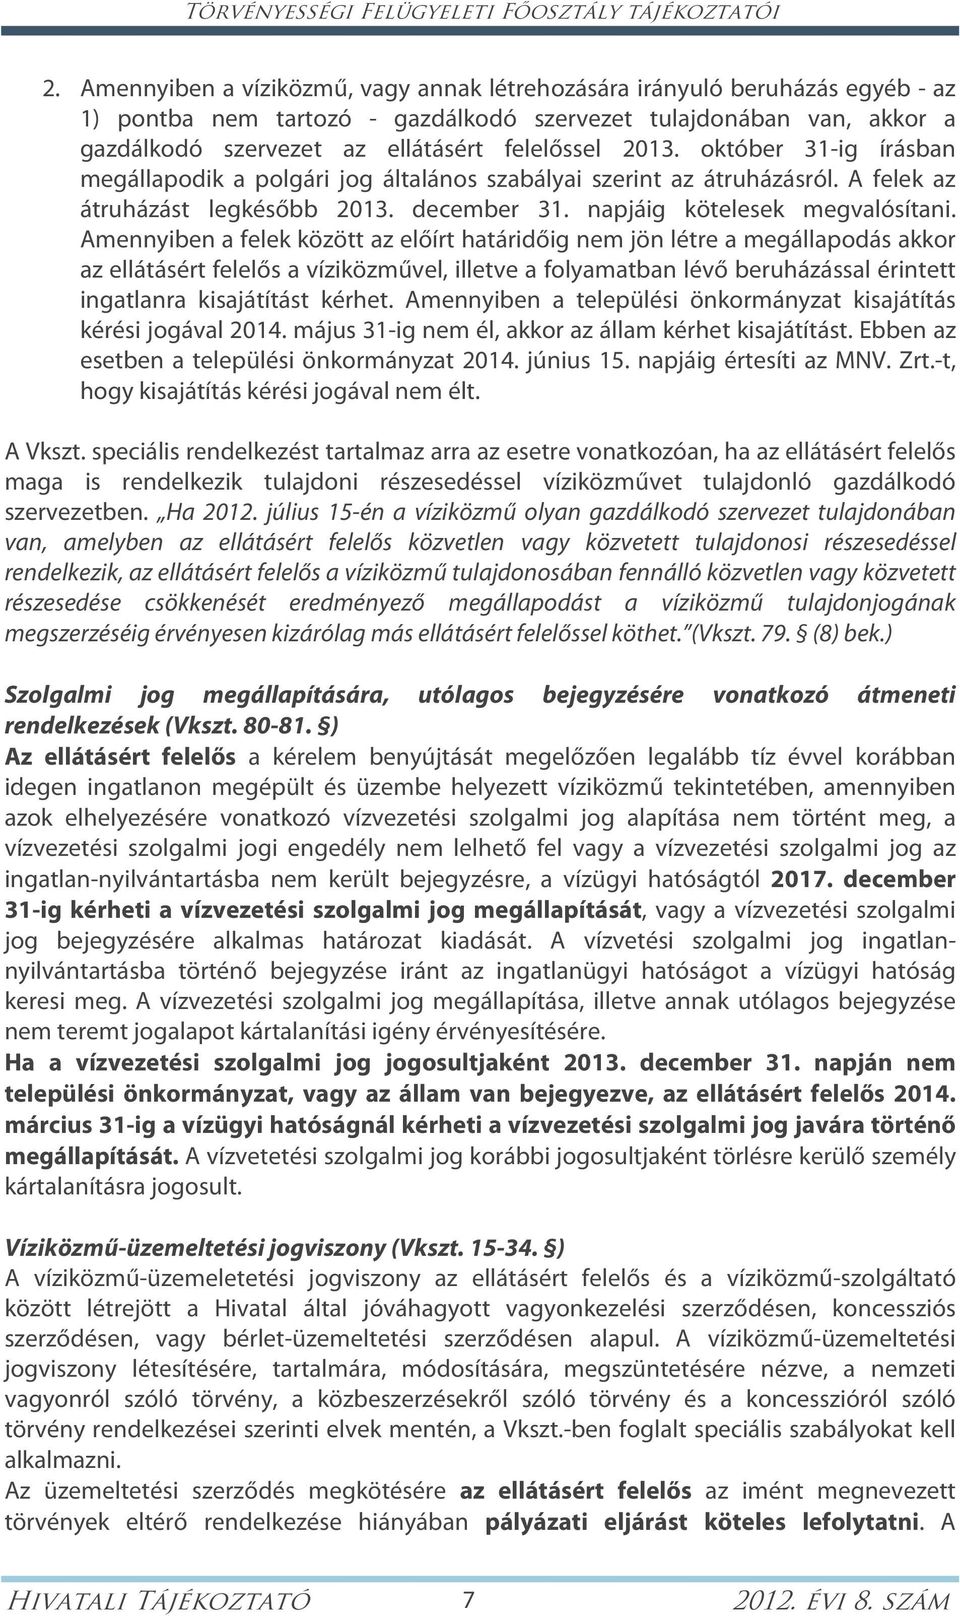 2013. október 31-ig írásban megállapodik a polgári jog általános szabályai szerint az átruházásról. A felek az átruházást legkésőbb 2013. december 31. napjáig kötelesek megvalósítani.